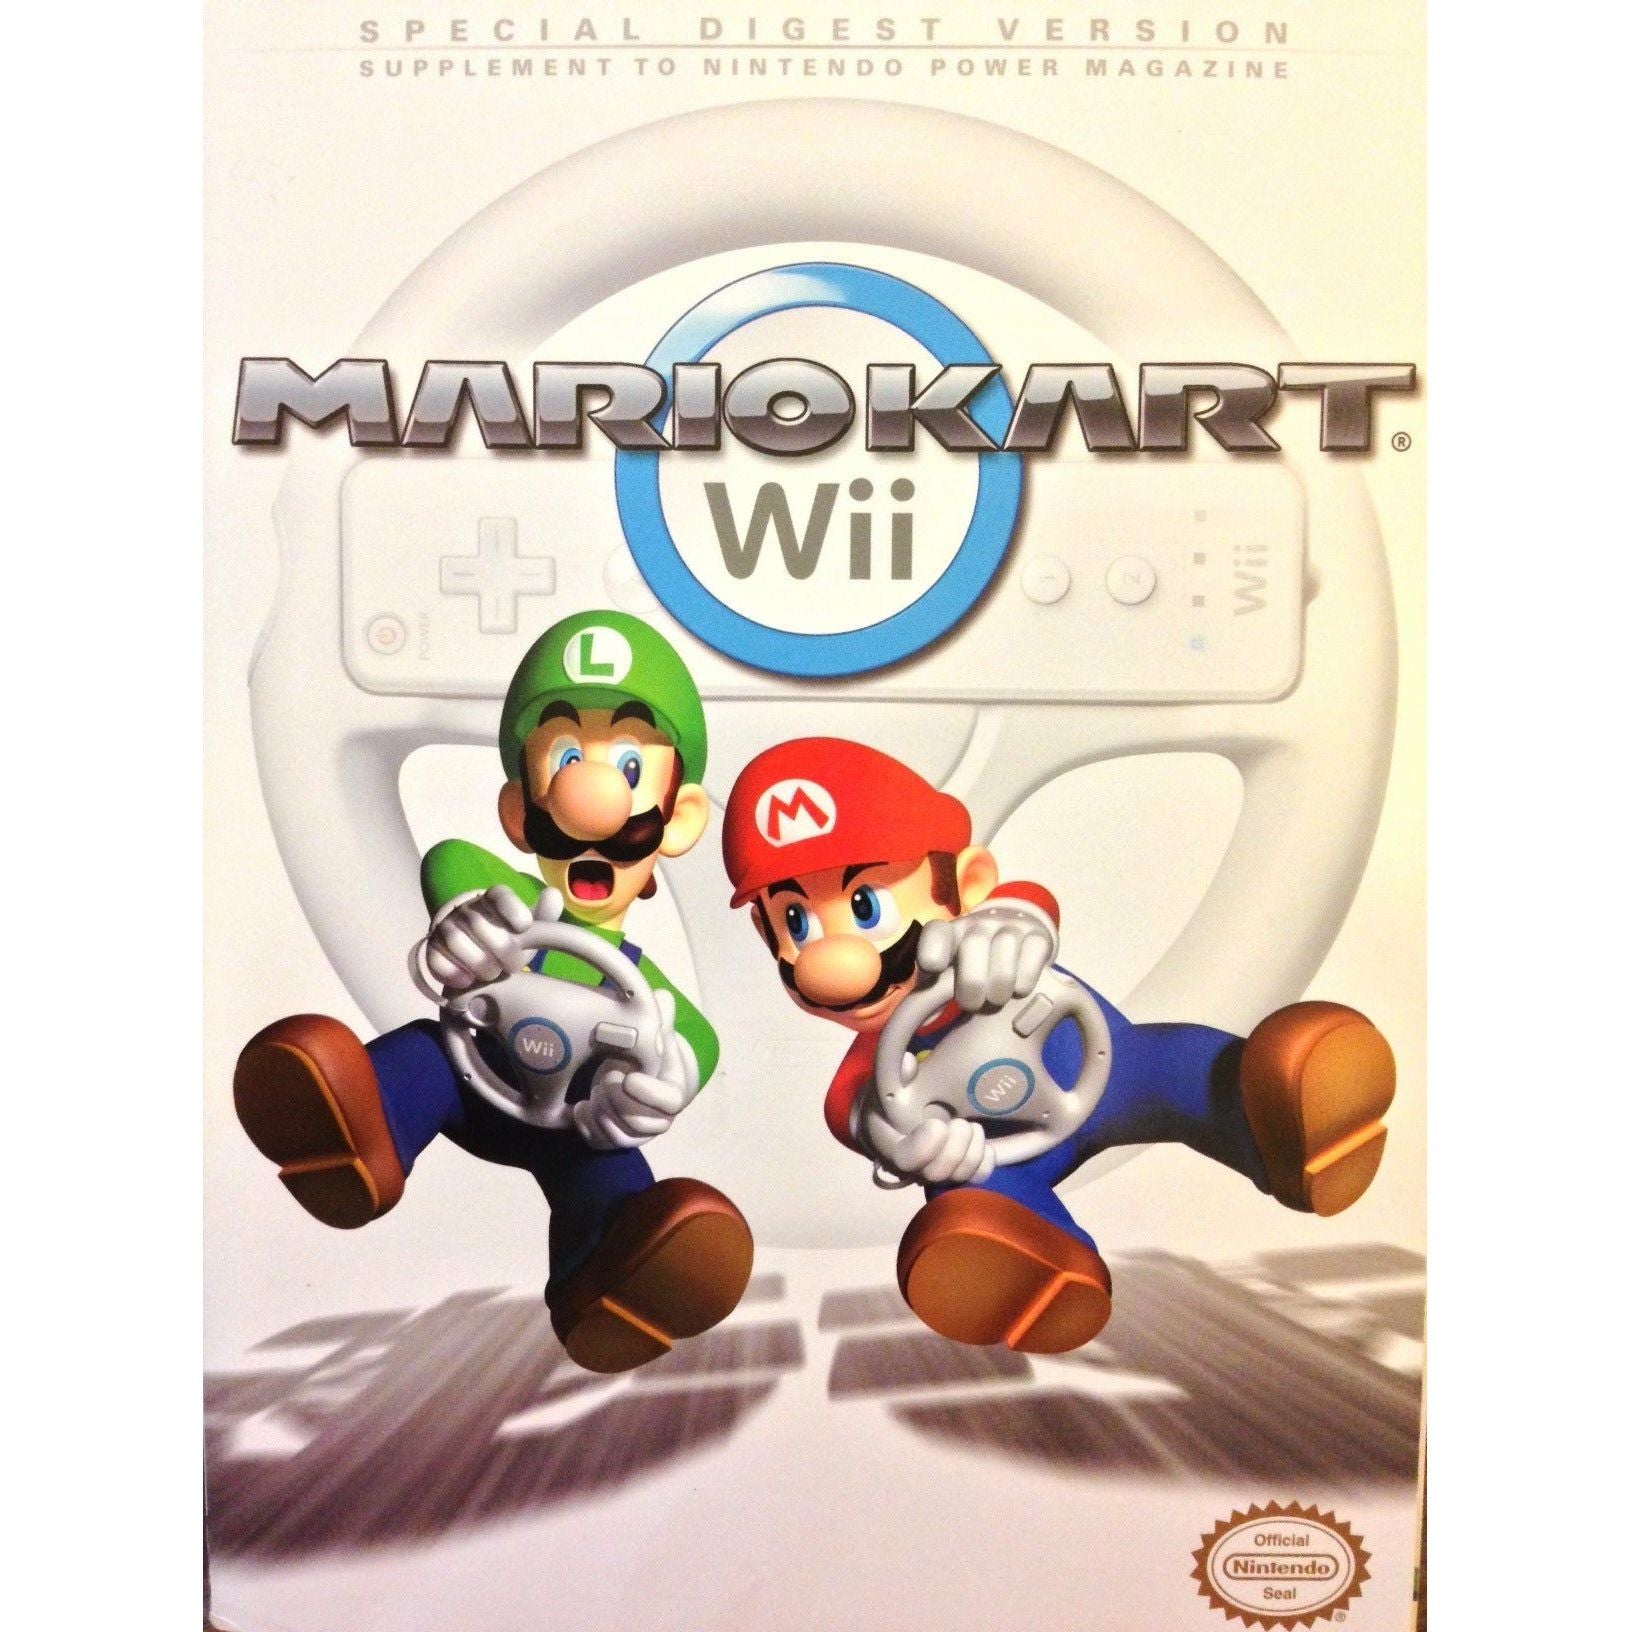 STRAT - Version résumée spéciale de Mario Kart Wii